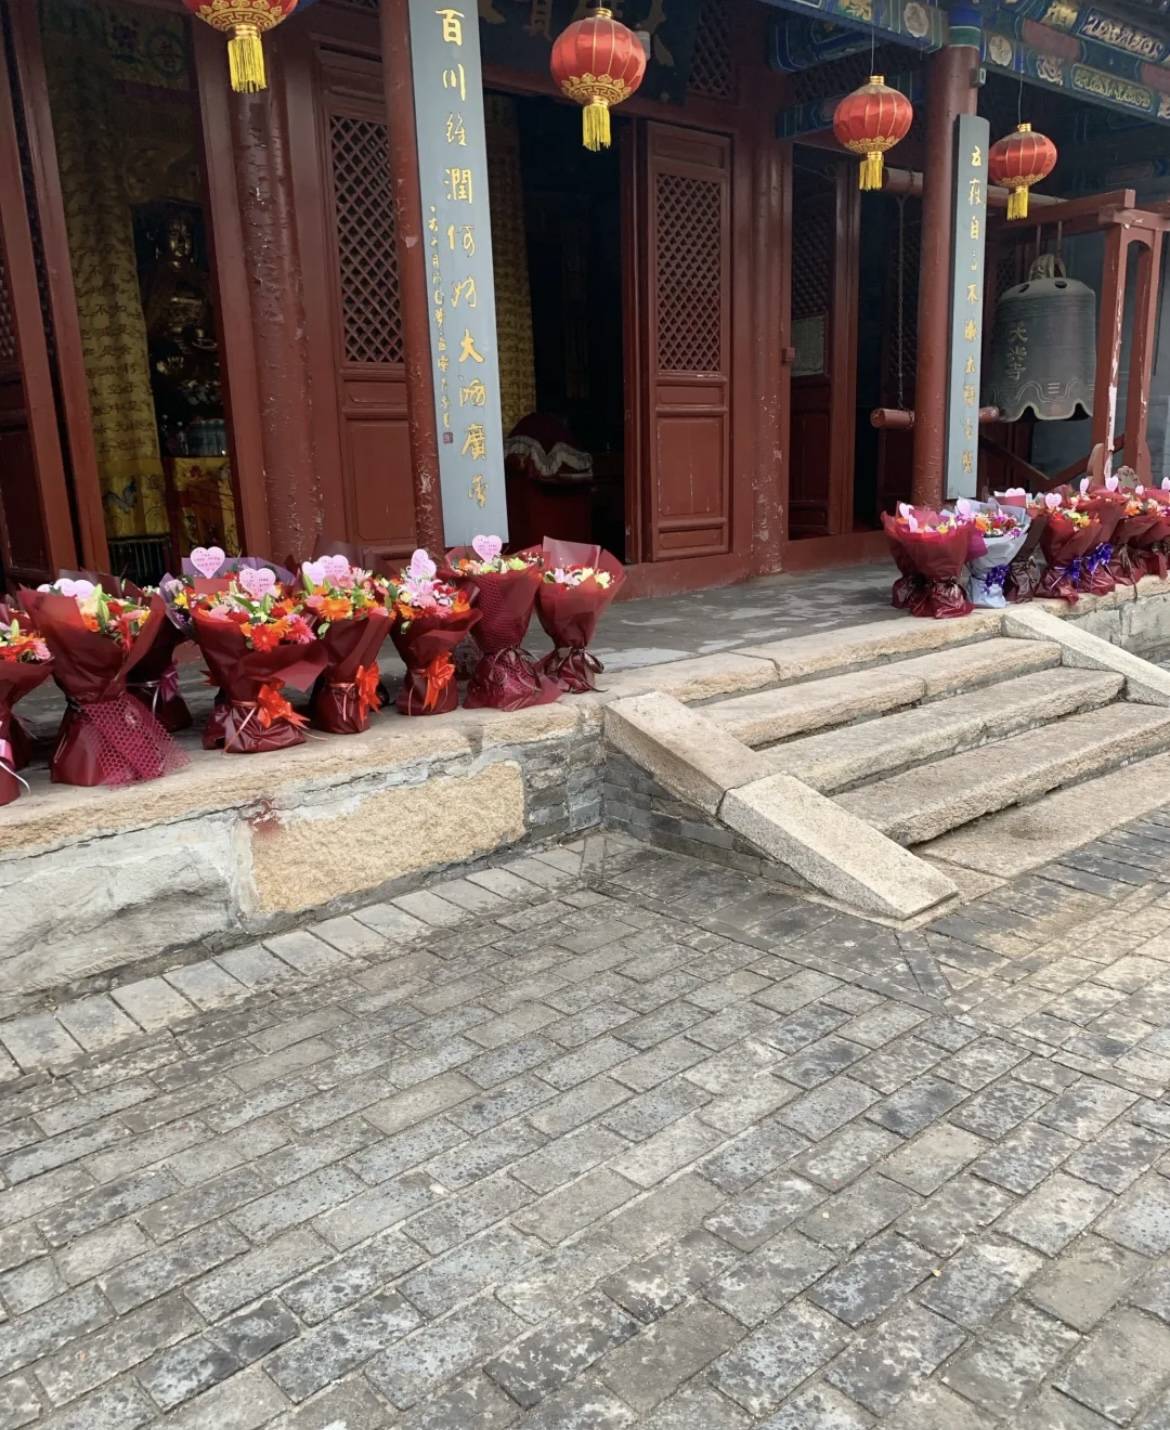 的行礼台(也就是给释迦牟尼佛像进行洗礼的台子)大兴寺位于北京市昌平